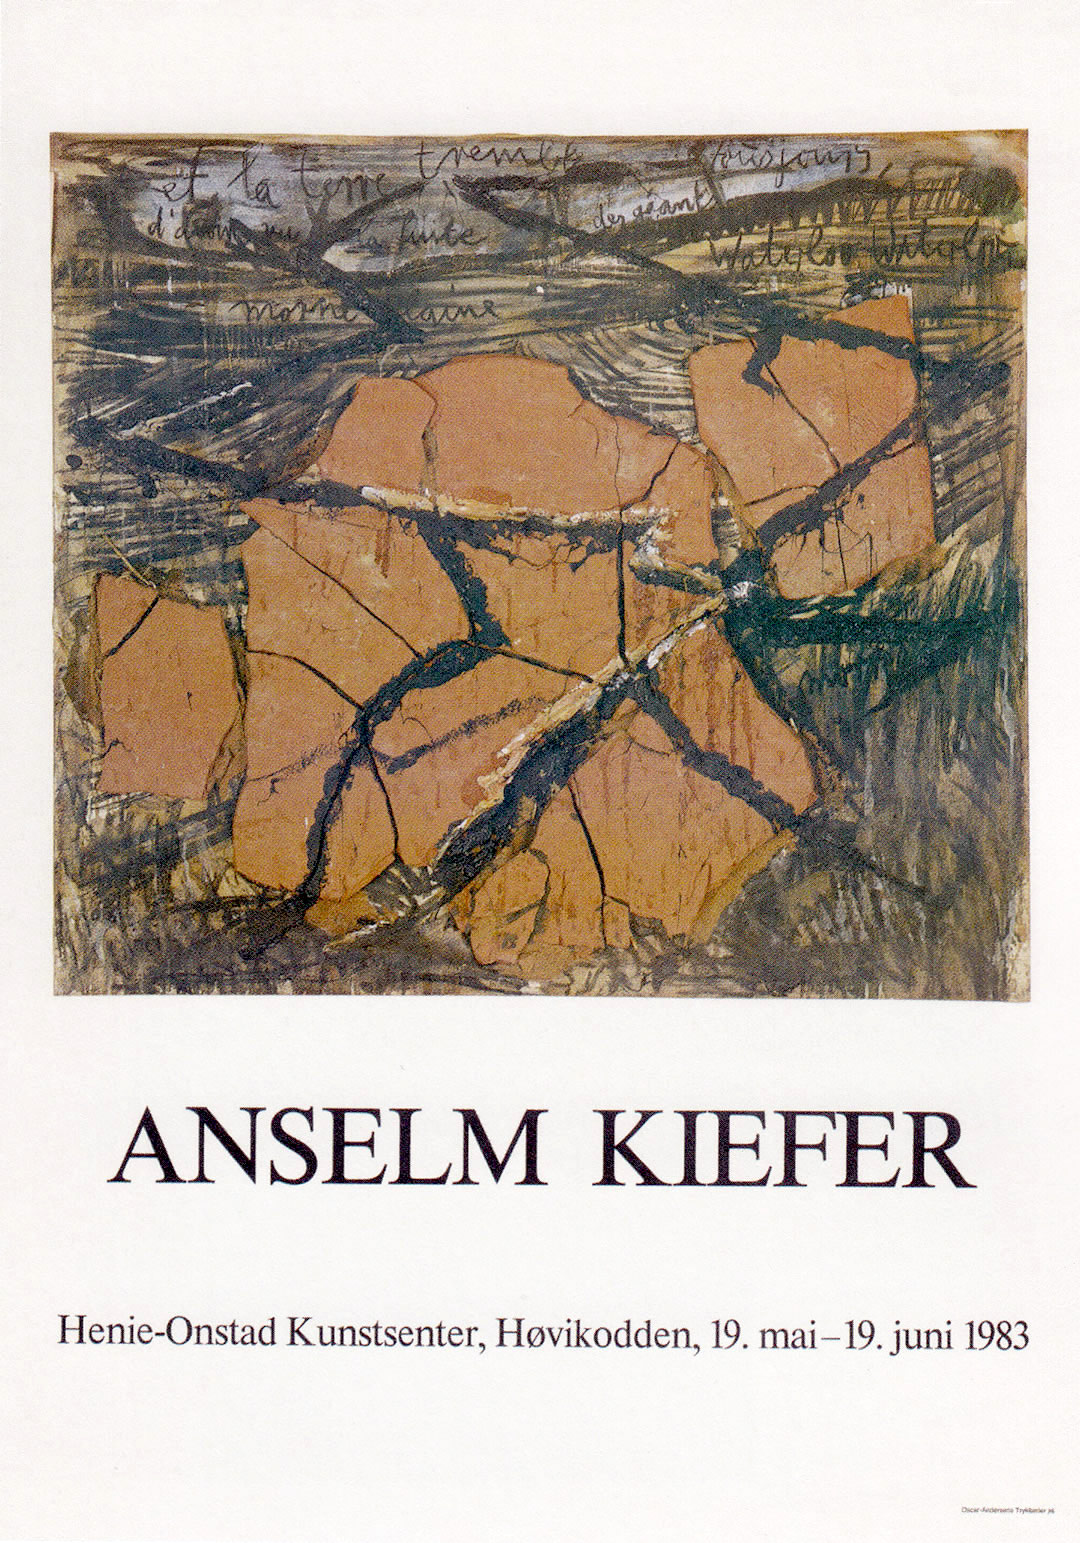 Anselm Kiefer. Henie-Onstad Kunstsenter, Høvikodden. 1983